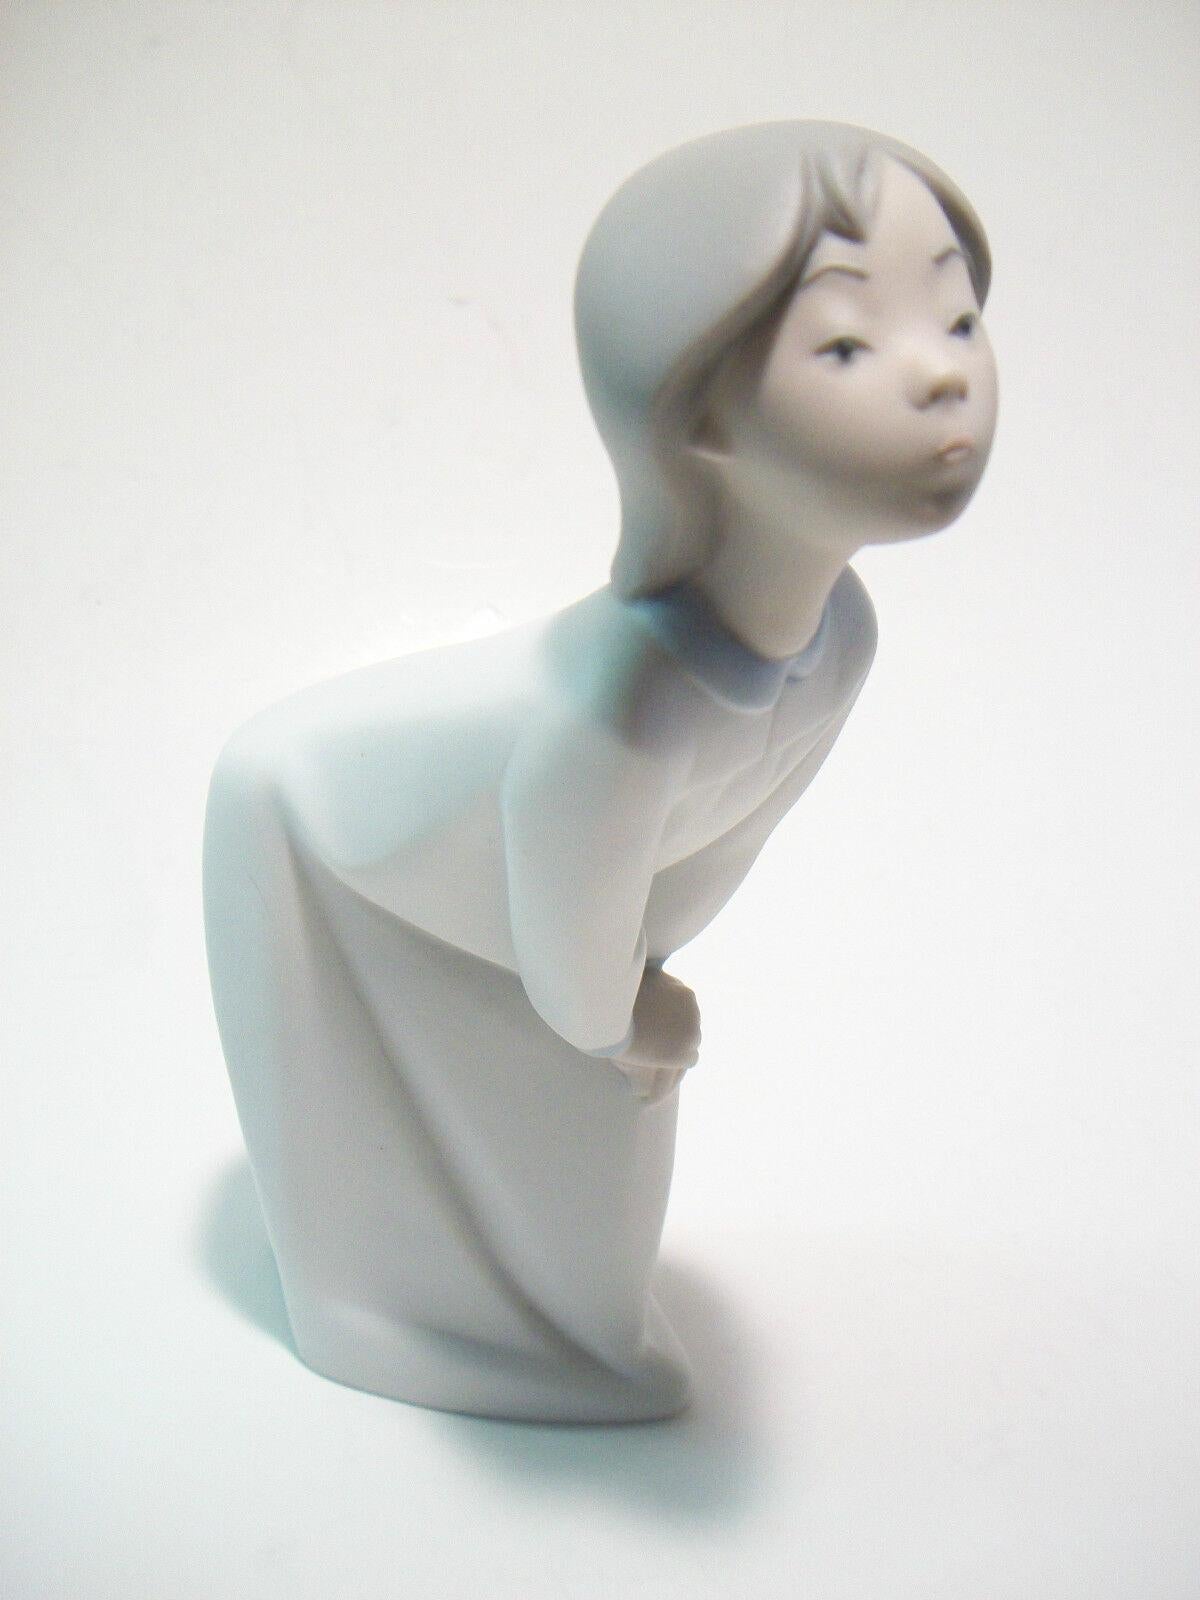 LLADRO - Vintage mattierte Keramikfigur - sich bückendes Mädchen im Nachthemd - ausgemustert - Fabrikstempel auf dem Sockel - Spanien - Mitte 20. Jahrhundert.

Ausgezeichneter Vintage-Zustand - kein Verlust - keine Beschädigung - keine Restaurierung